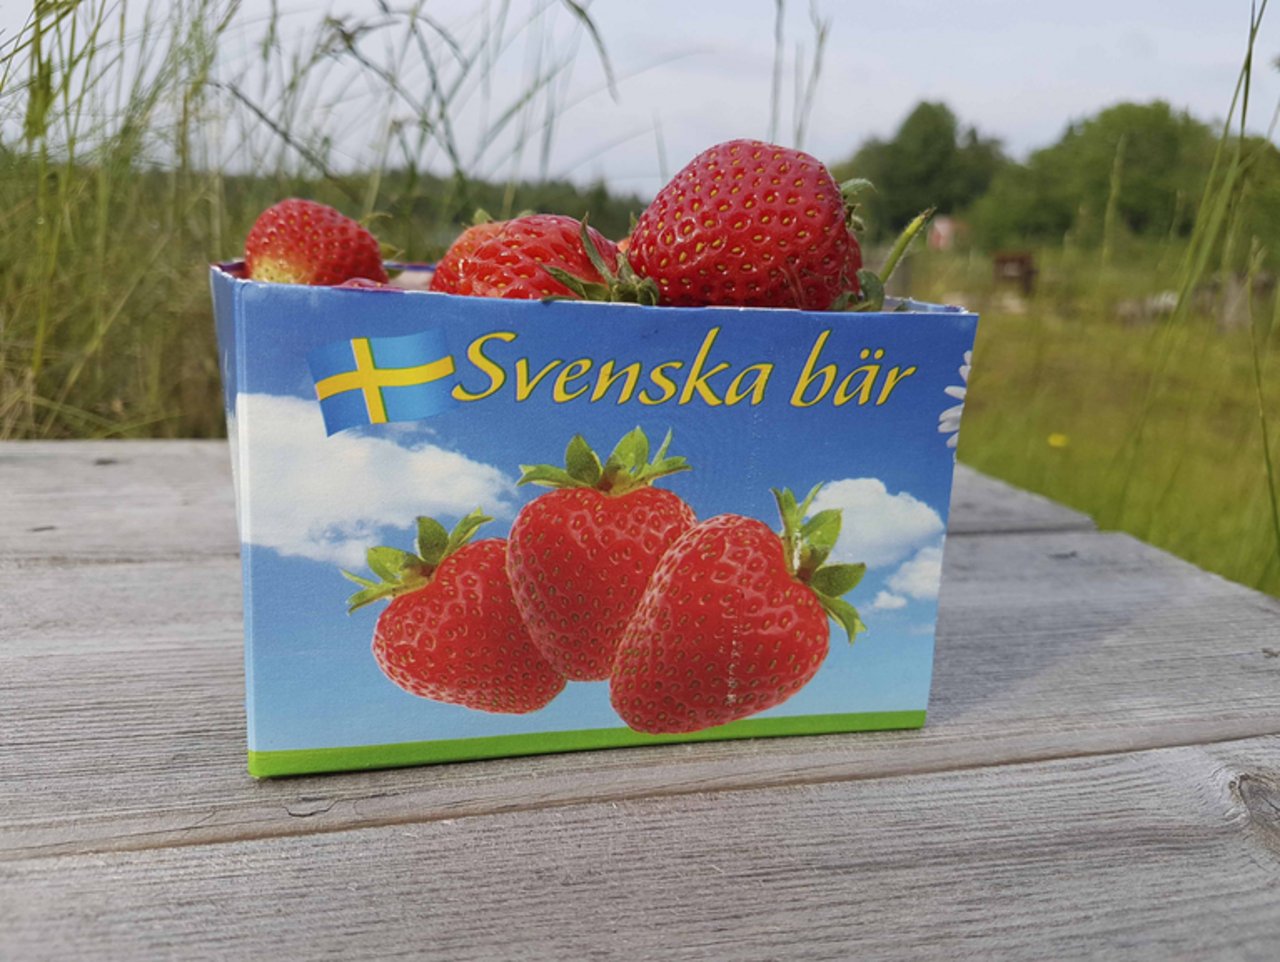 Für inländische Erdbeeren greifen die Schweden gerne tiefer ins Portemonnaie. (Bild lid / ji)